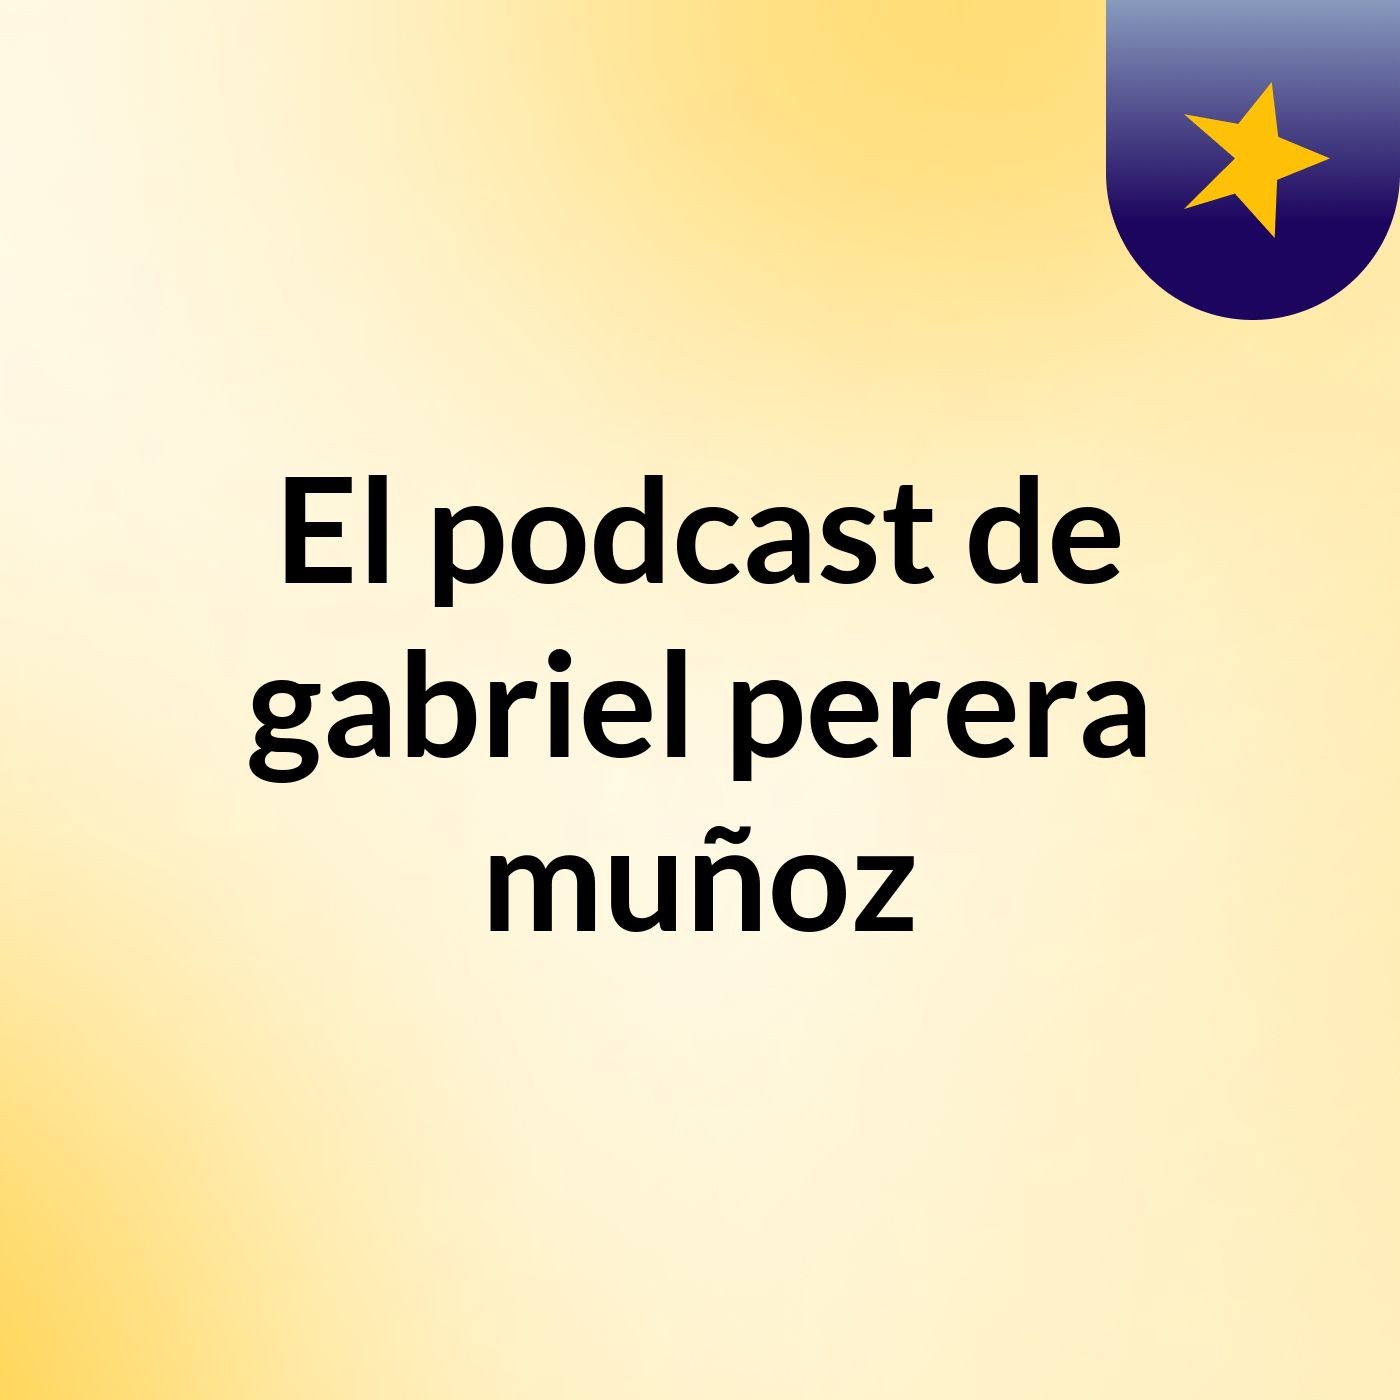 Episodio 11 - El podcast de gabriel perera muñoz